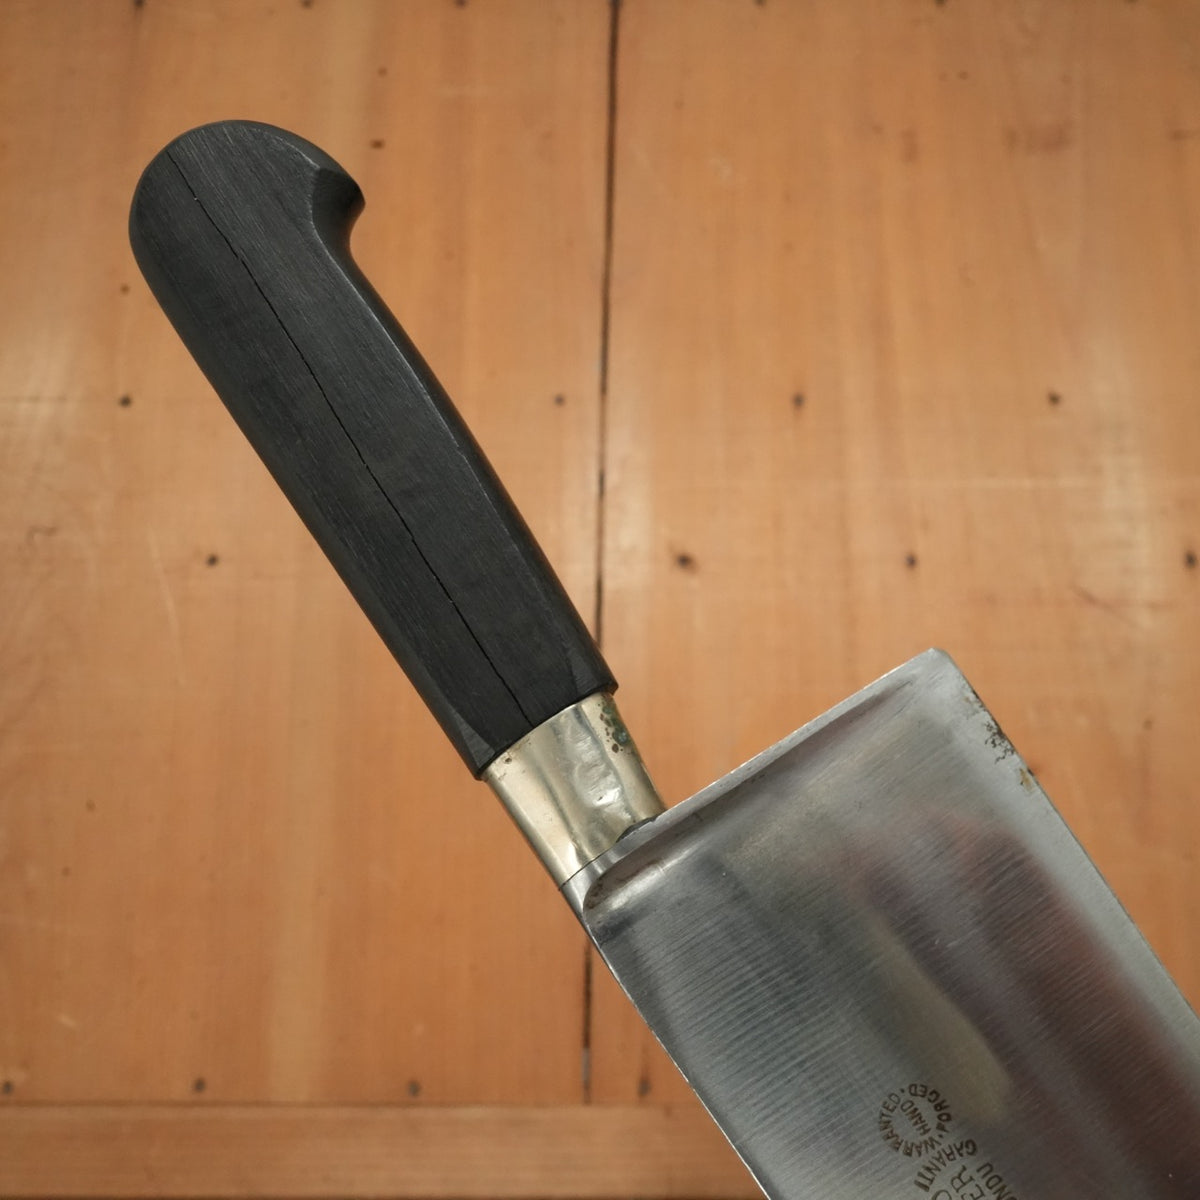 New Vintage PD Sabatier Acier Fondu 35cm / 13.75" Chef Knife Cuisine Massive / Nogent Carbon 1930's?